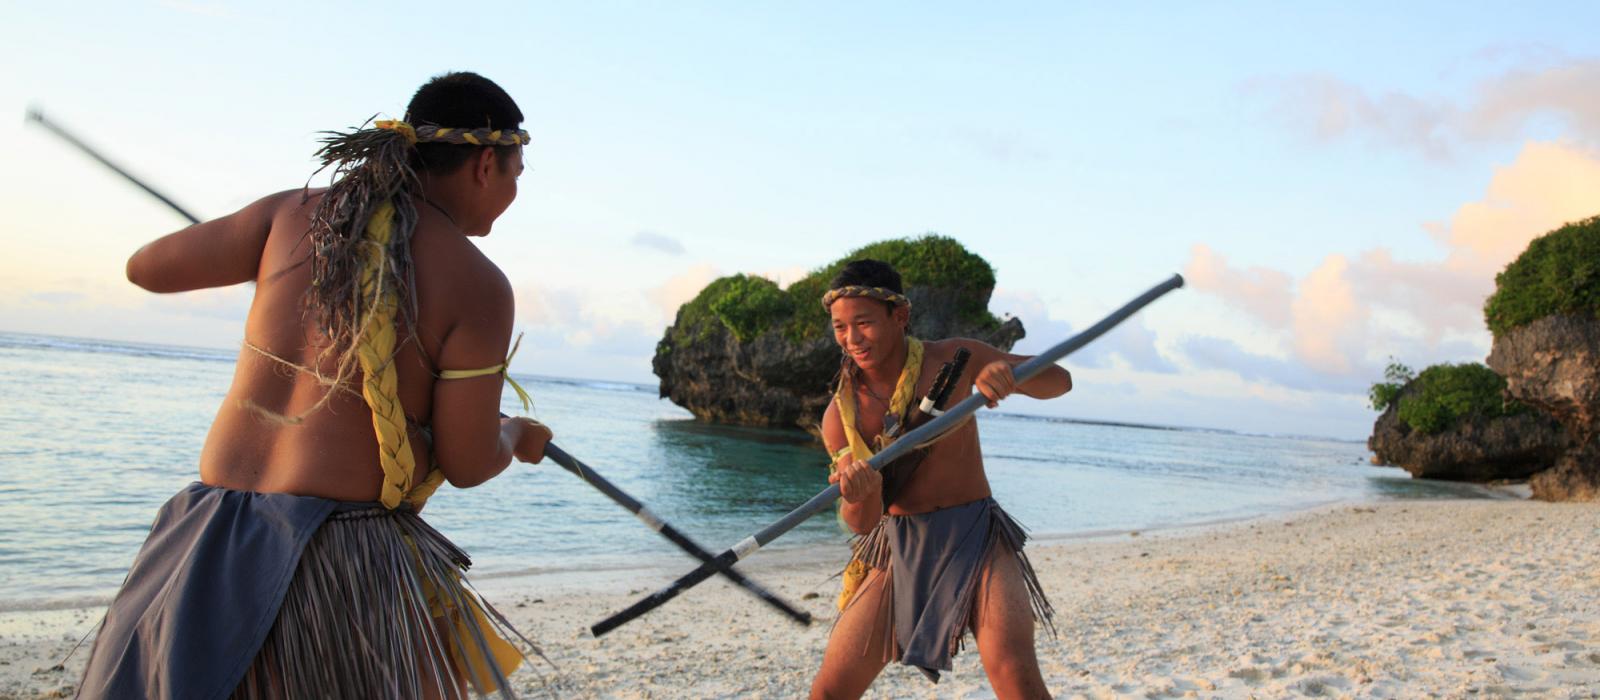 Du lịch Guam, trải nghiệm văn hóa thổ dân Chamorror độc lạ - Ảnh 3.